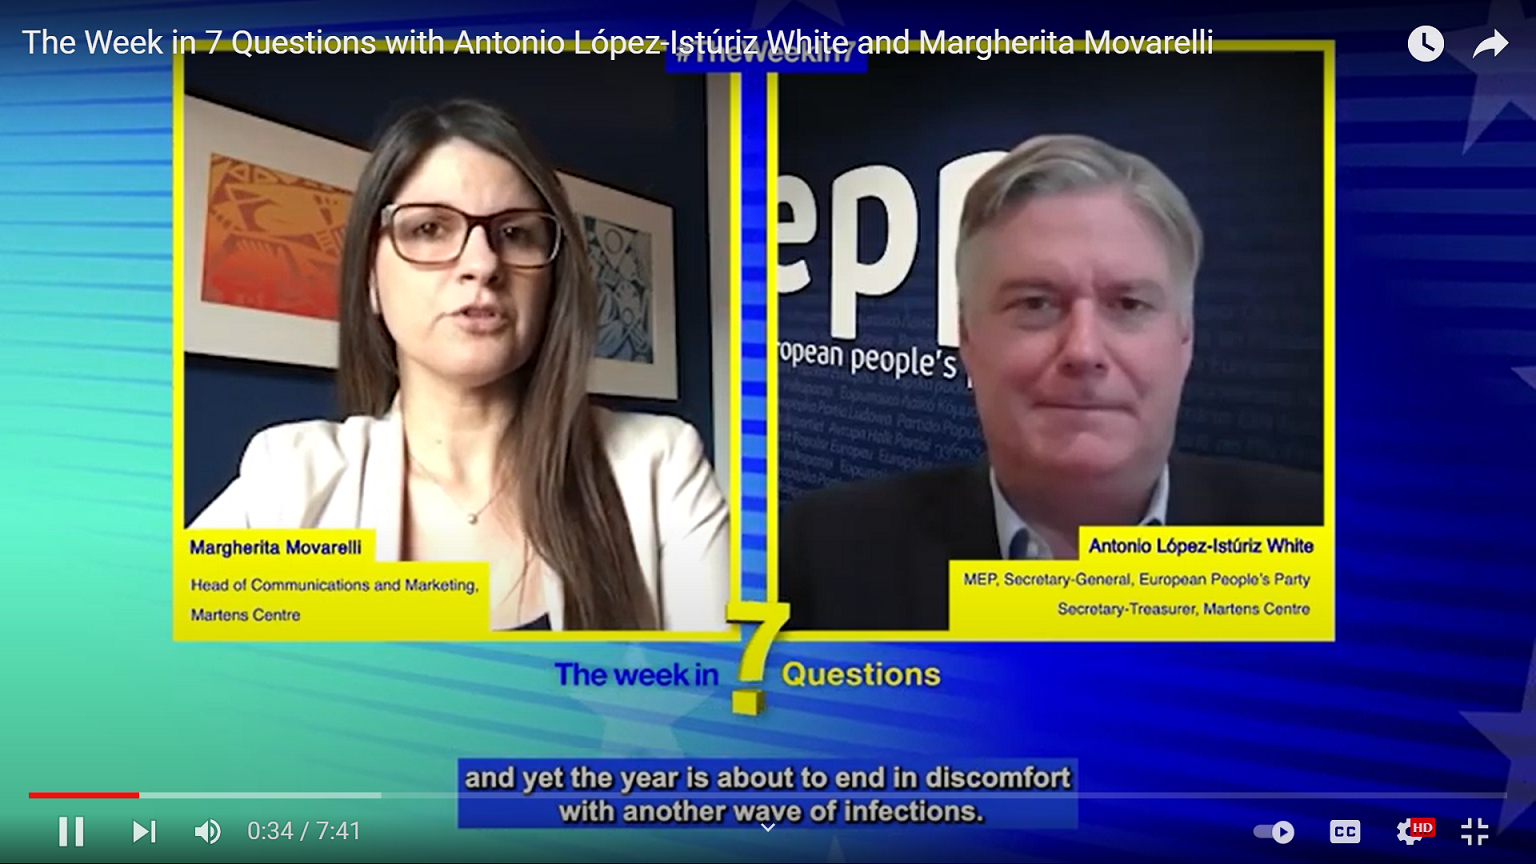 The Week in 7 Questions with Antonio López-Istúriz White